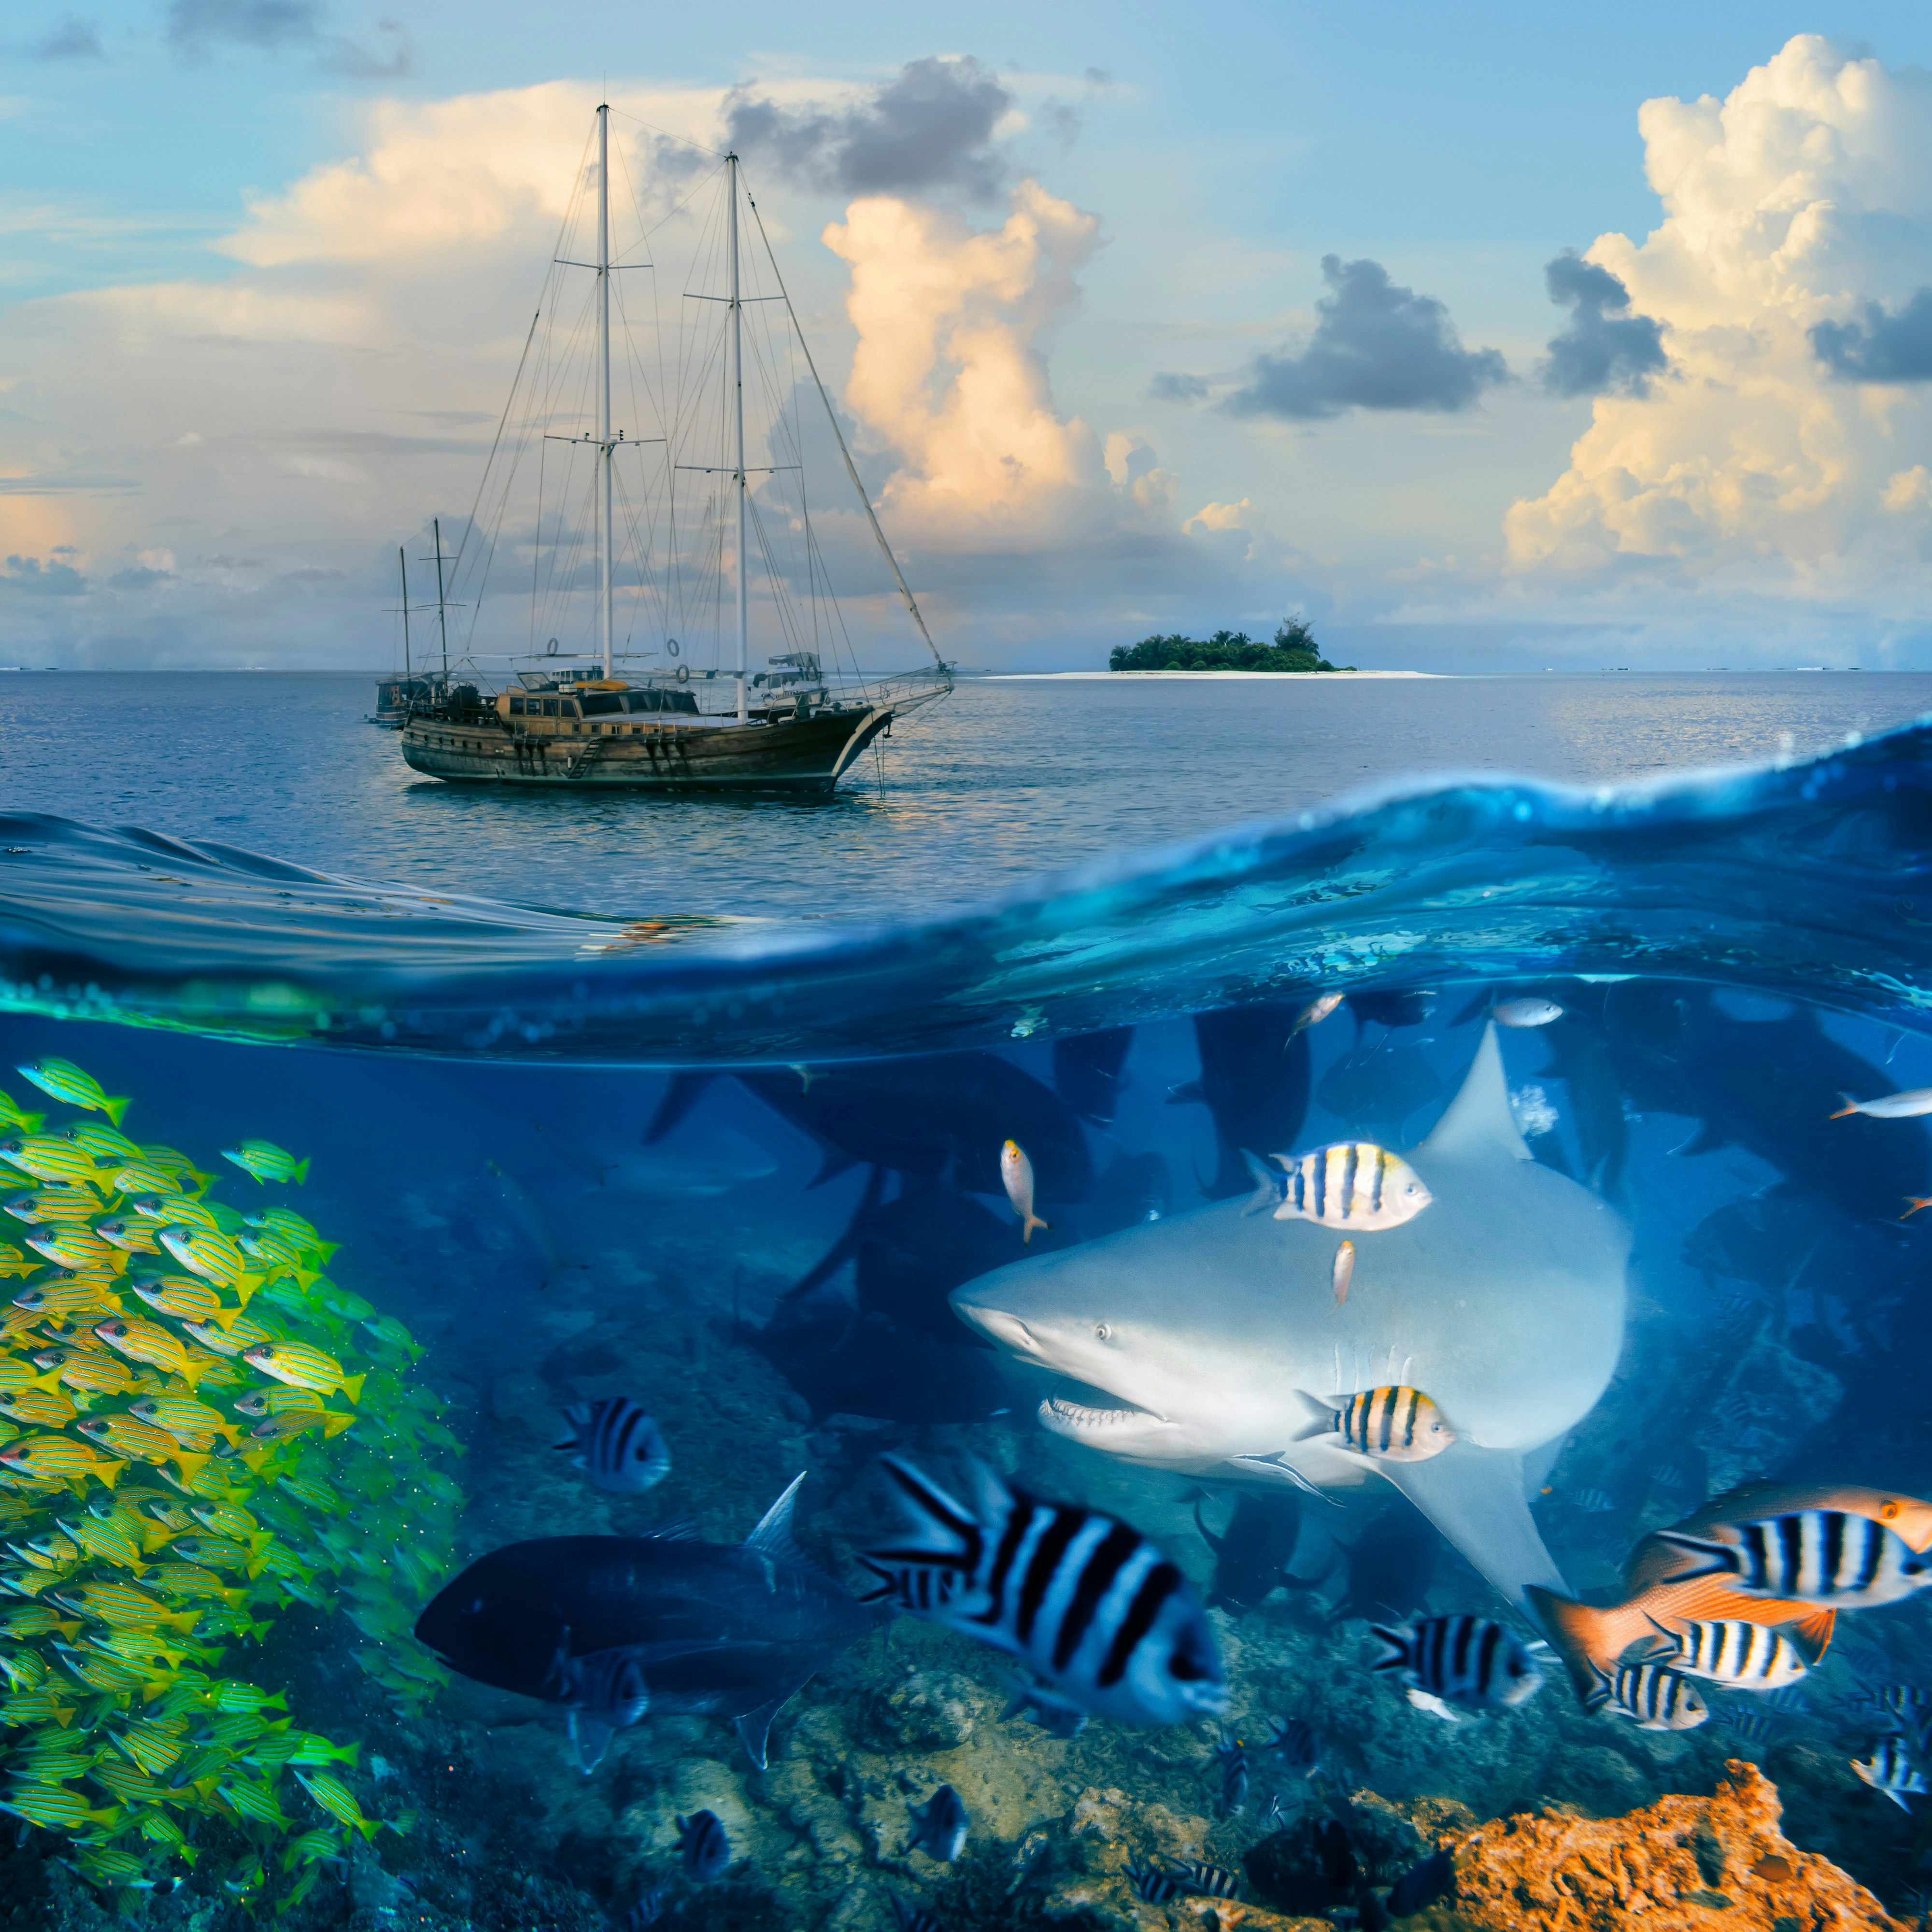 Die Unterwasserwelt birgt unglaubliche Schönheit